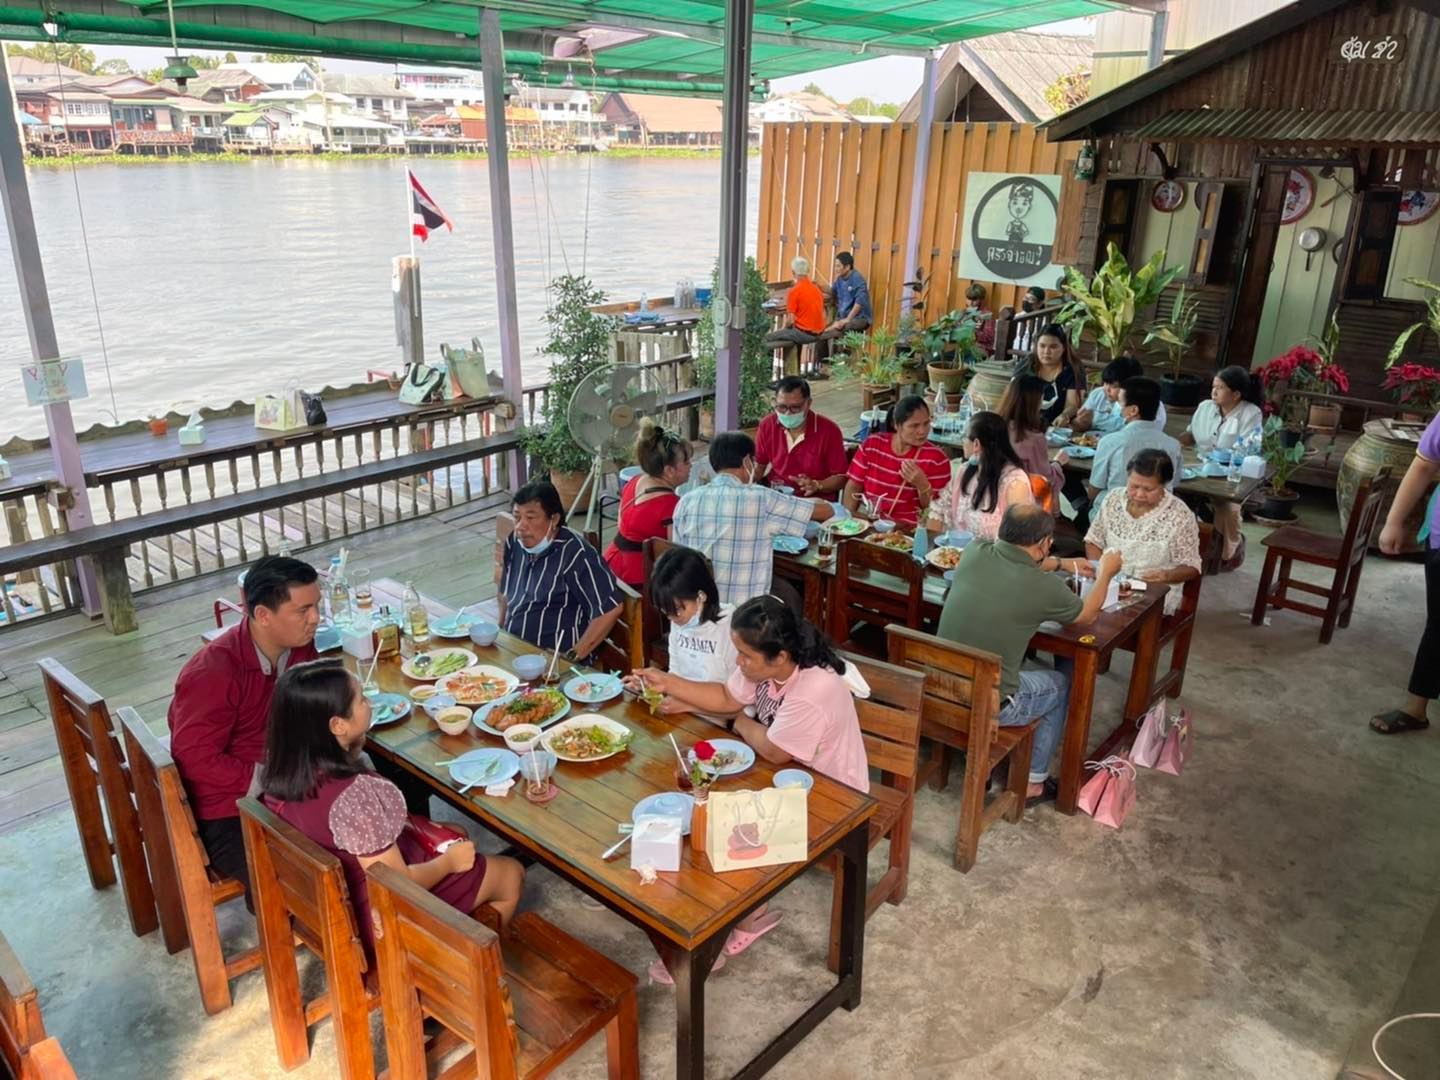 ครัวจ่ายัณ 2 ปลาแม่น้ำ/ซีฟู้ด (ครัวจ่ายัณ 2 ปลาแม่น้ำ/ซีฟู้ด) : Nonthaburi (นนทบุรี)